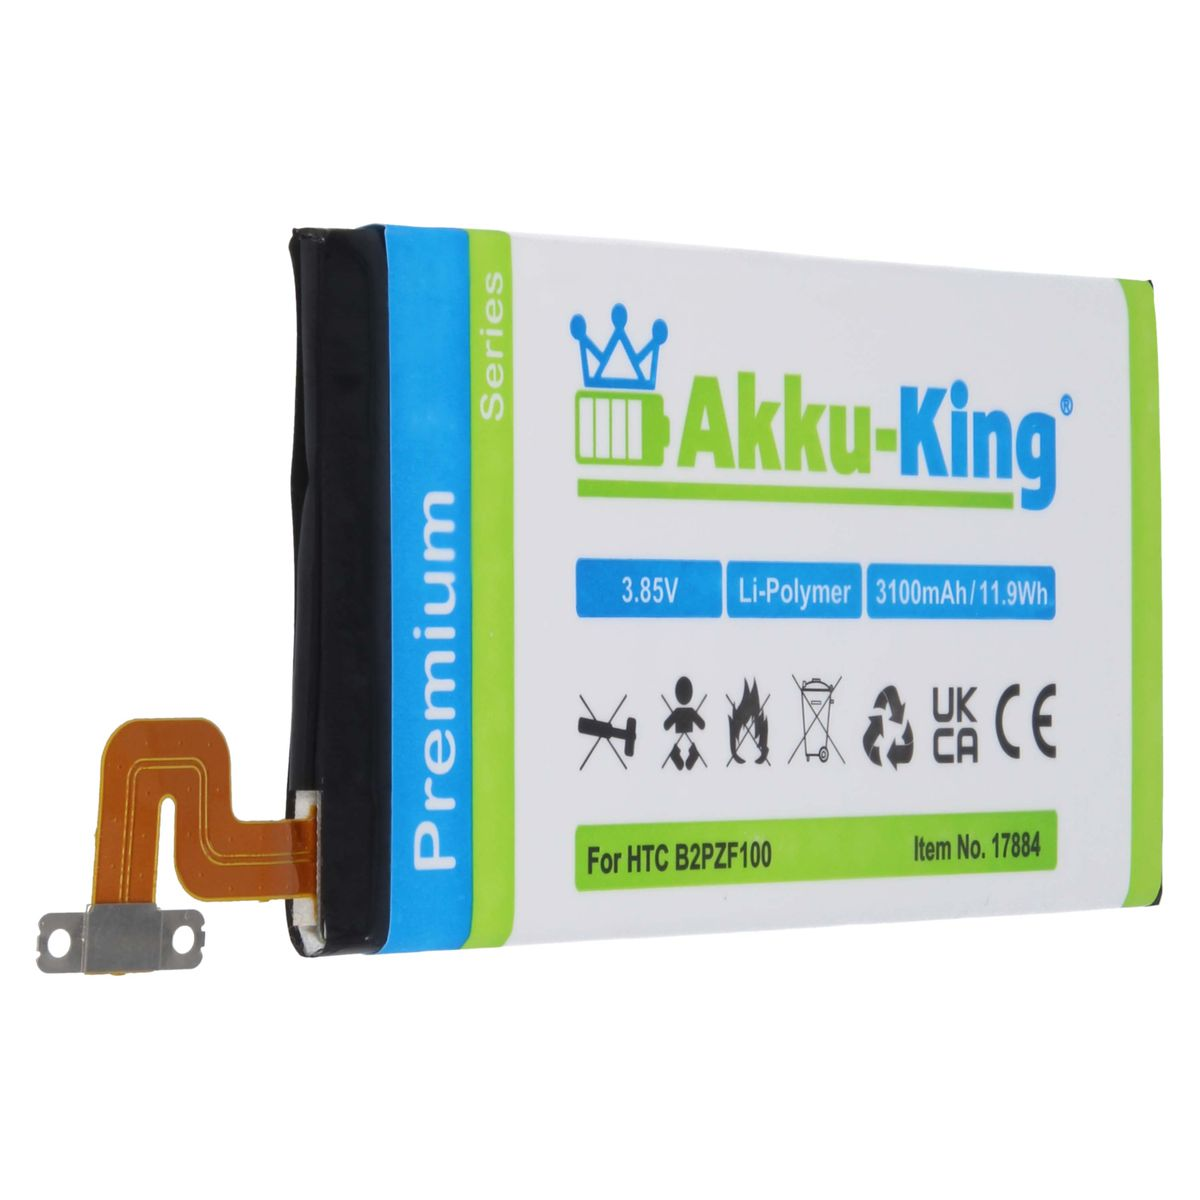 Akku Volt, Li-Polymer HTC 3100mAh kompatibel AKKU-KING 3.85 mit B2PZF100 Handy-Akku,